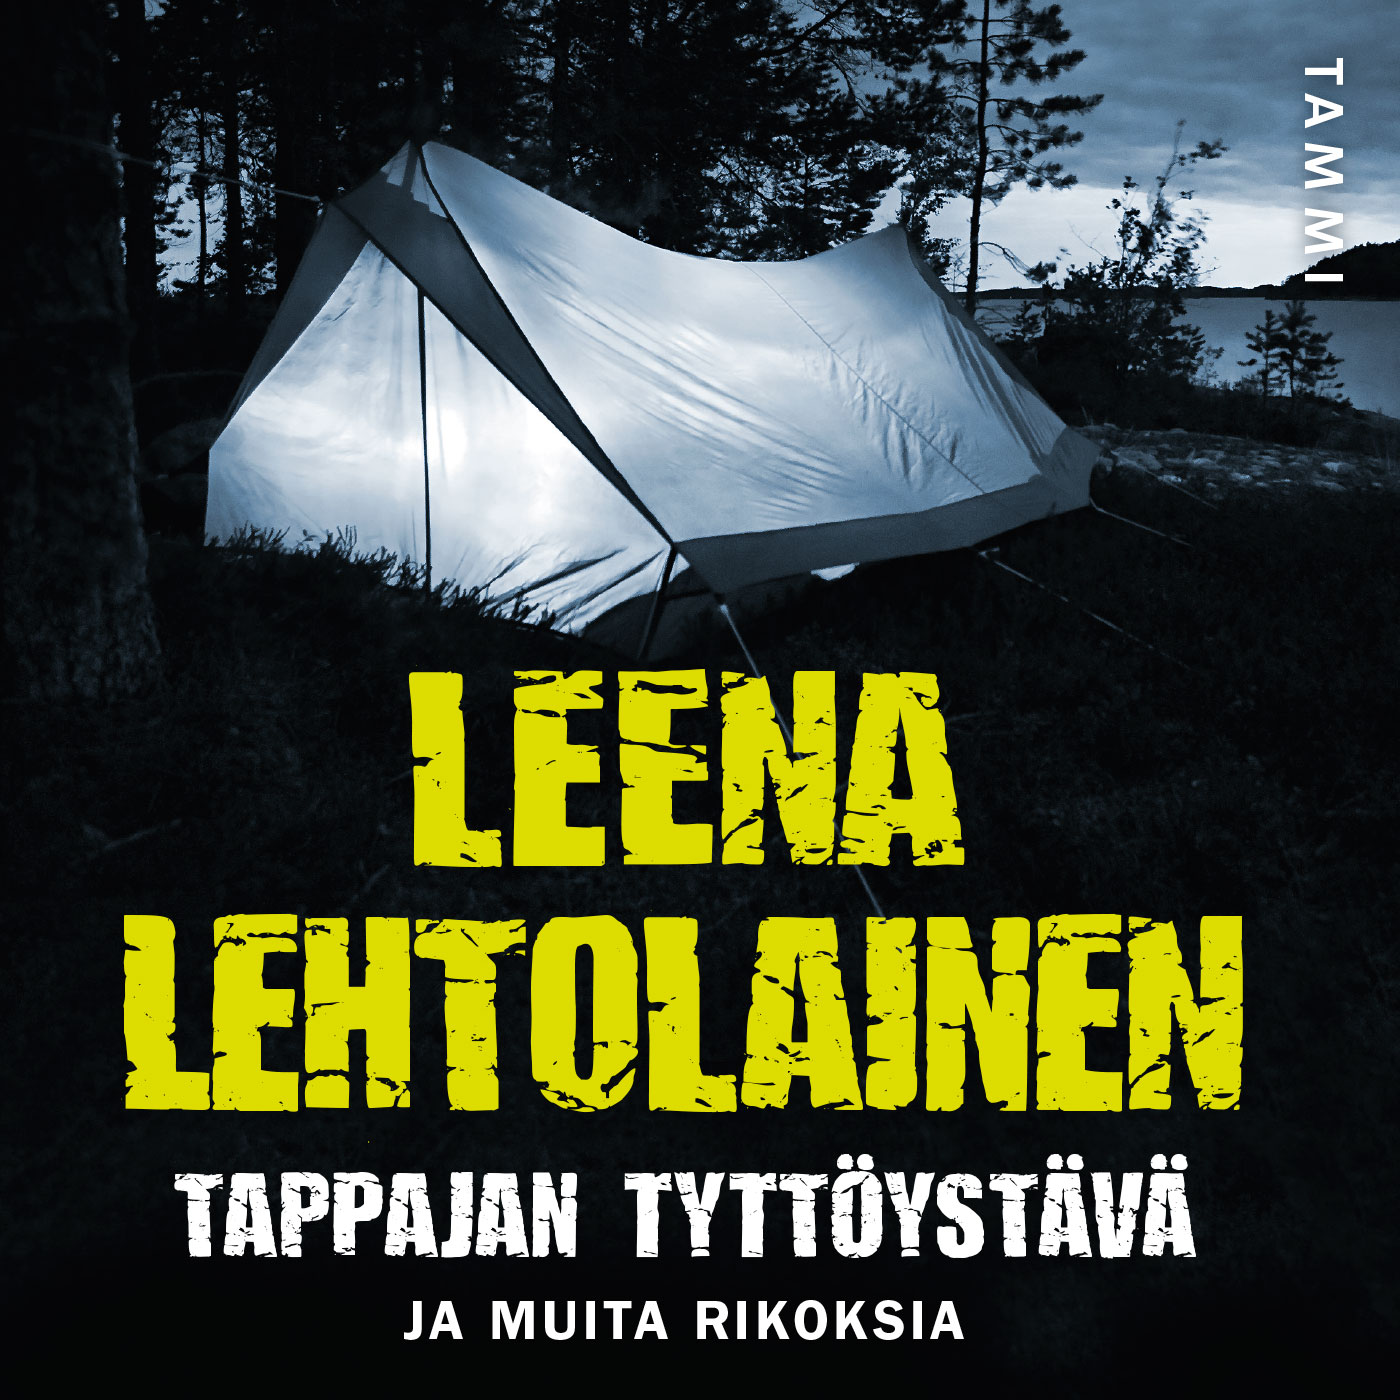 Lehtolainen, Leena - Tappajan tyttöystävä: ja muita rikoksia, audiobook